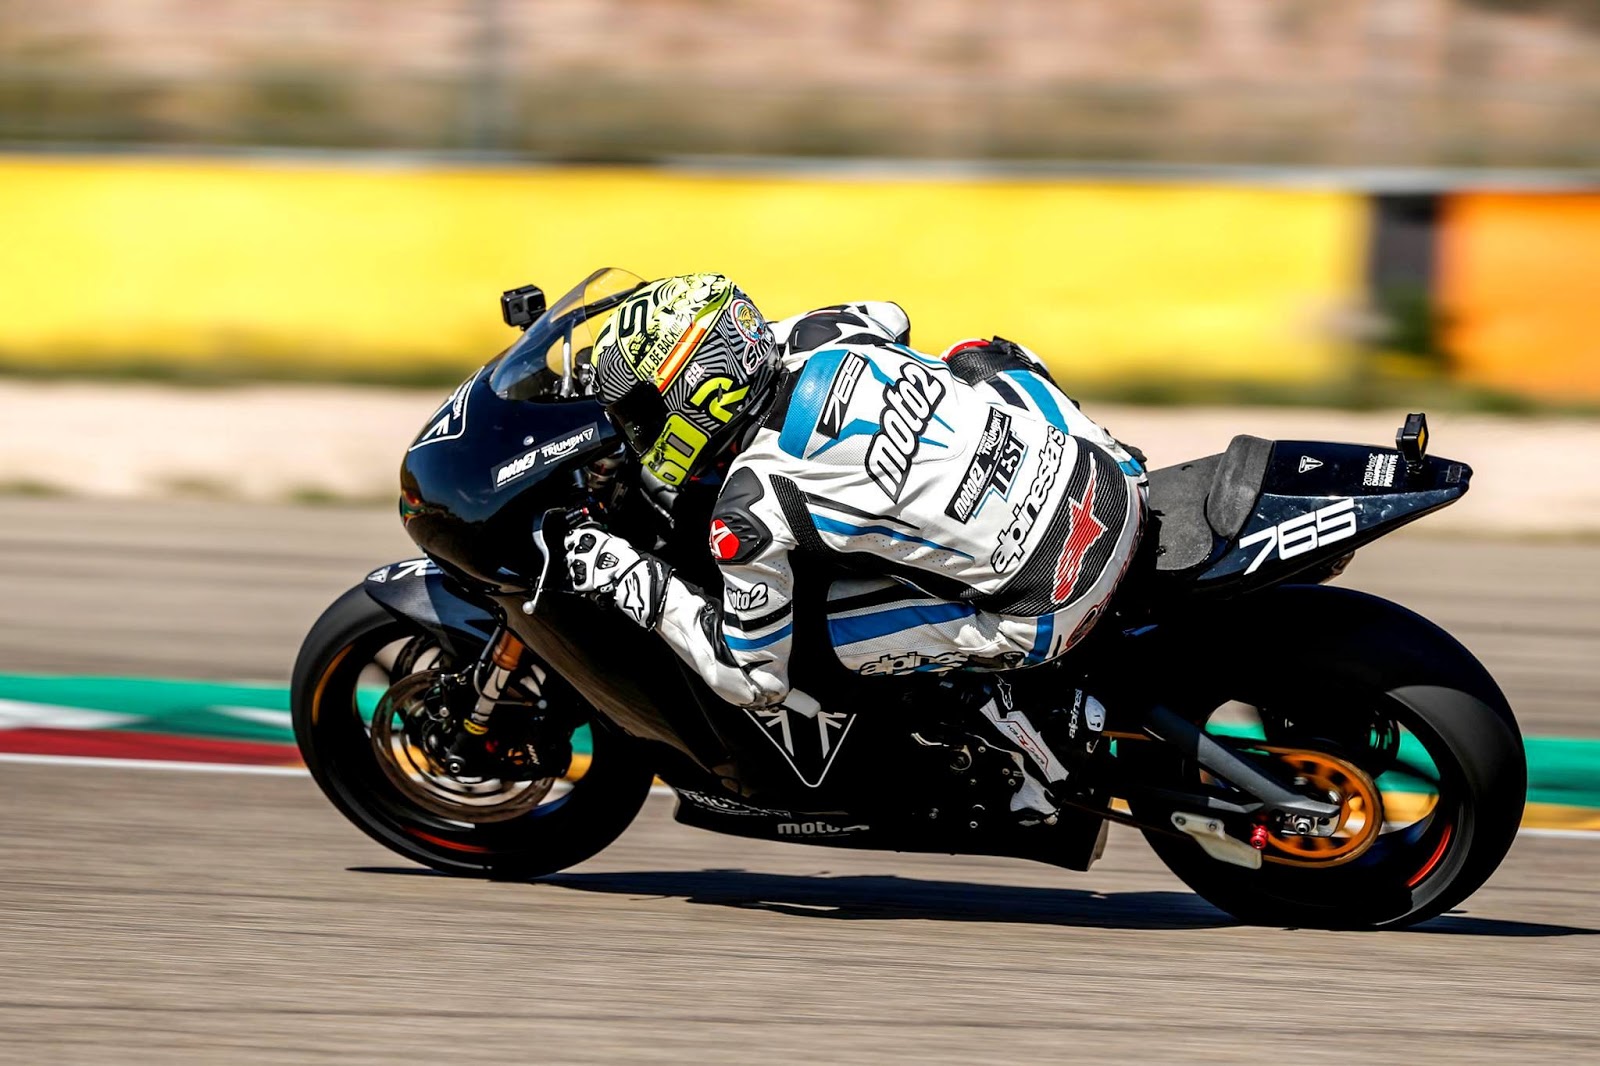 Mesin Triumph Moto2 Jalani Uji Coba dengan ECU Magneti Marelli di Sirkuit Aragon